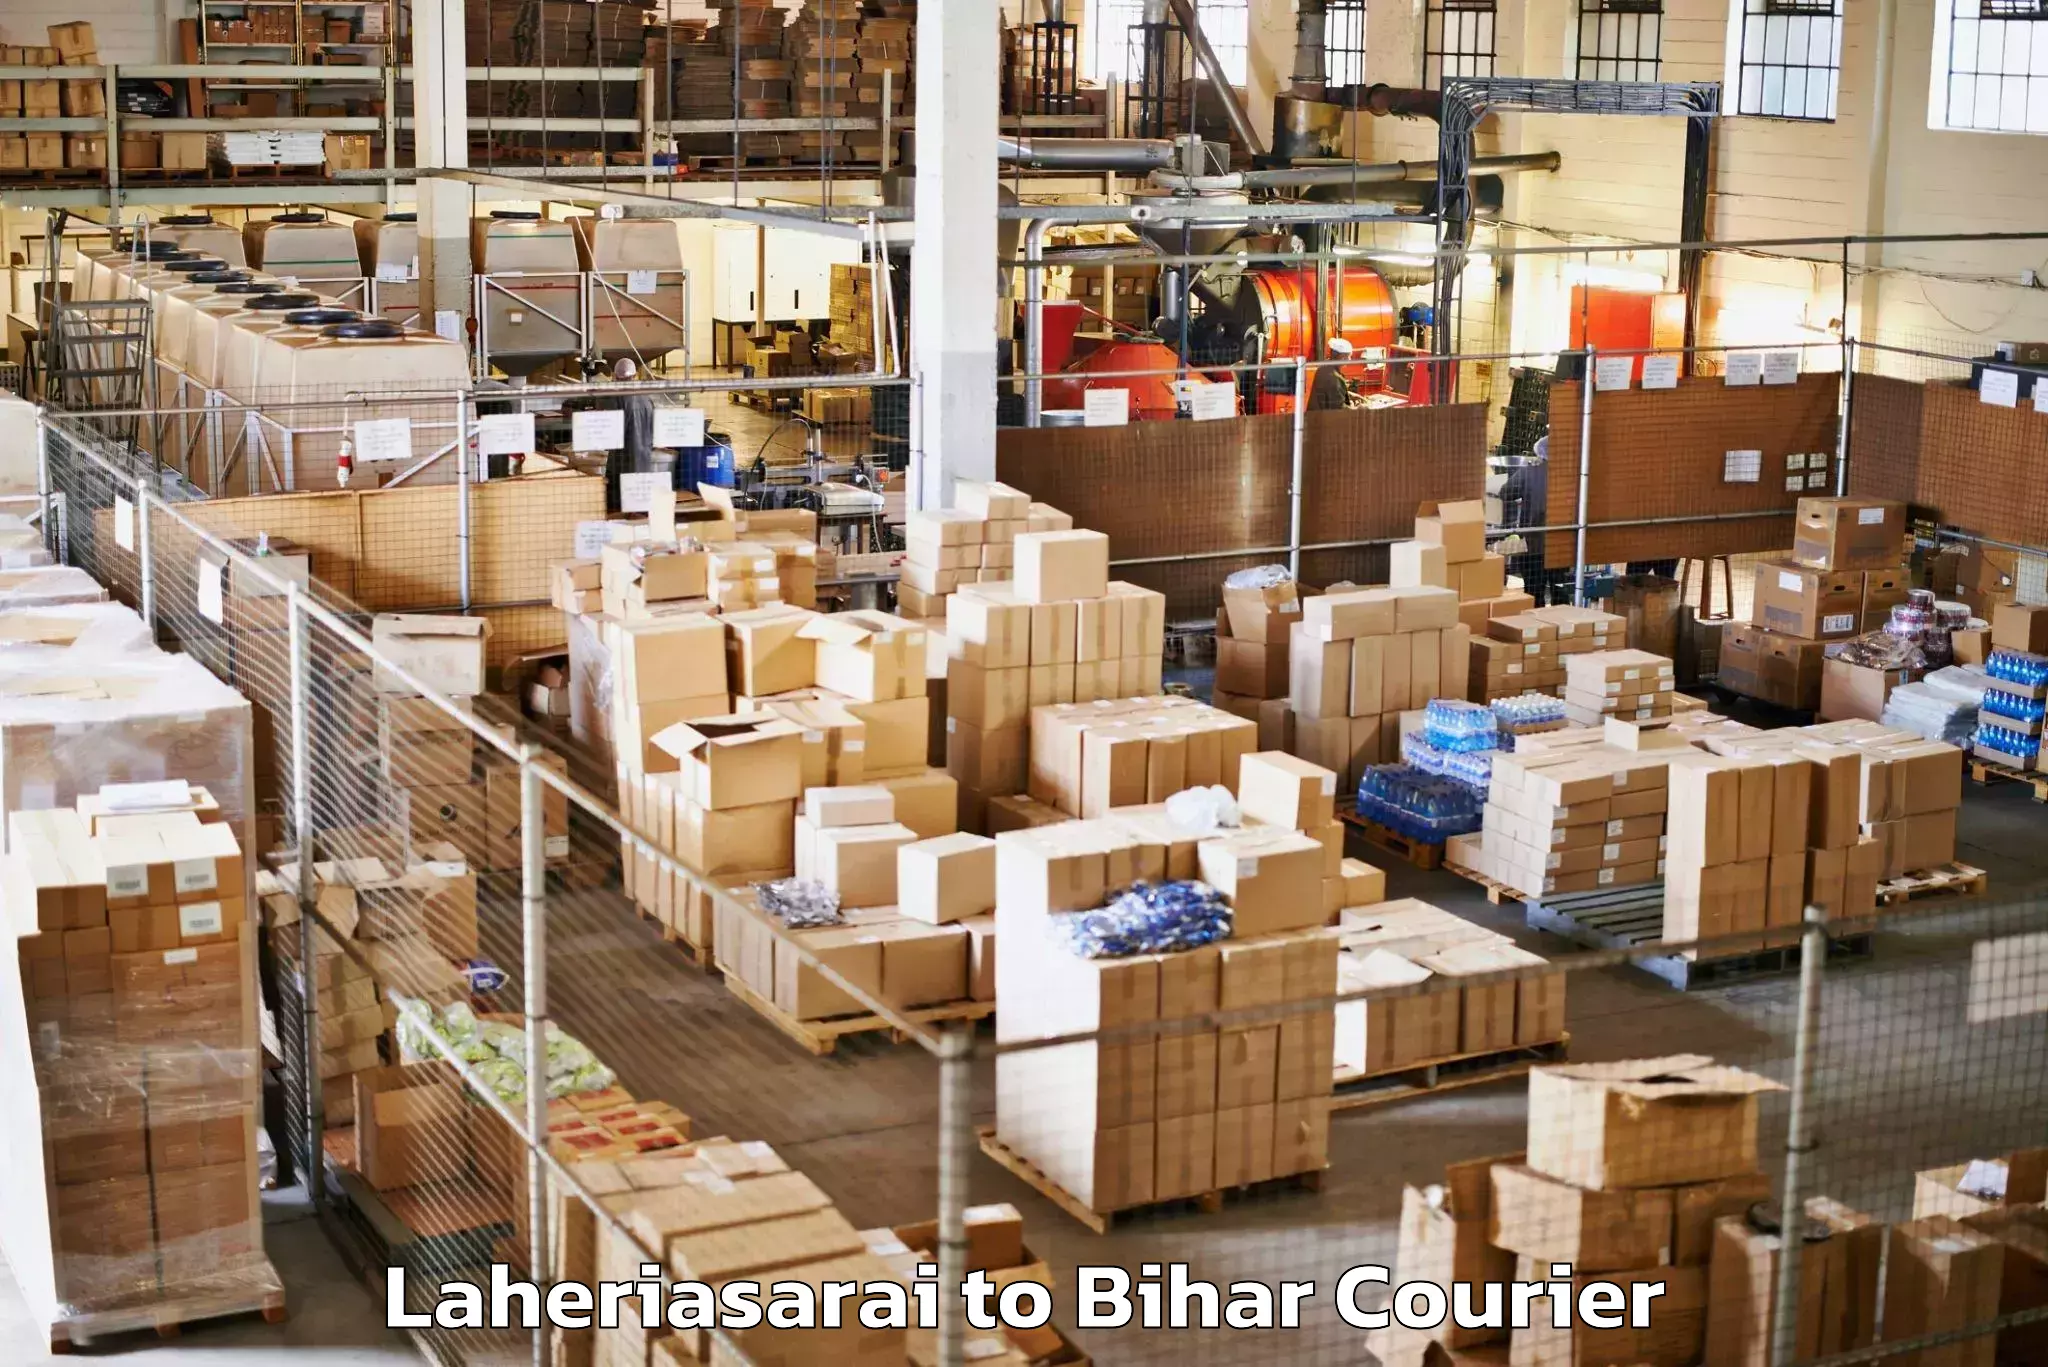 Luggage transport consulting Laheriasarai to Chakai